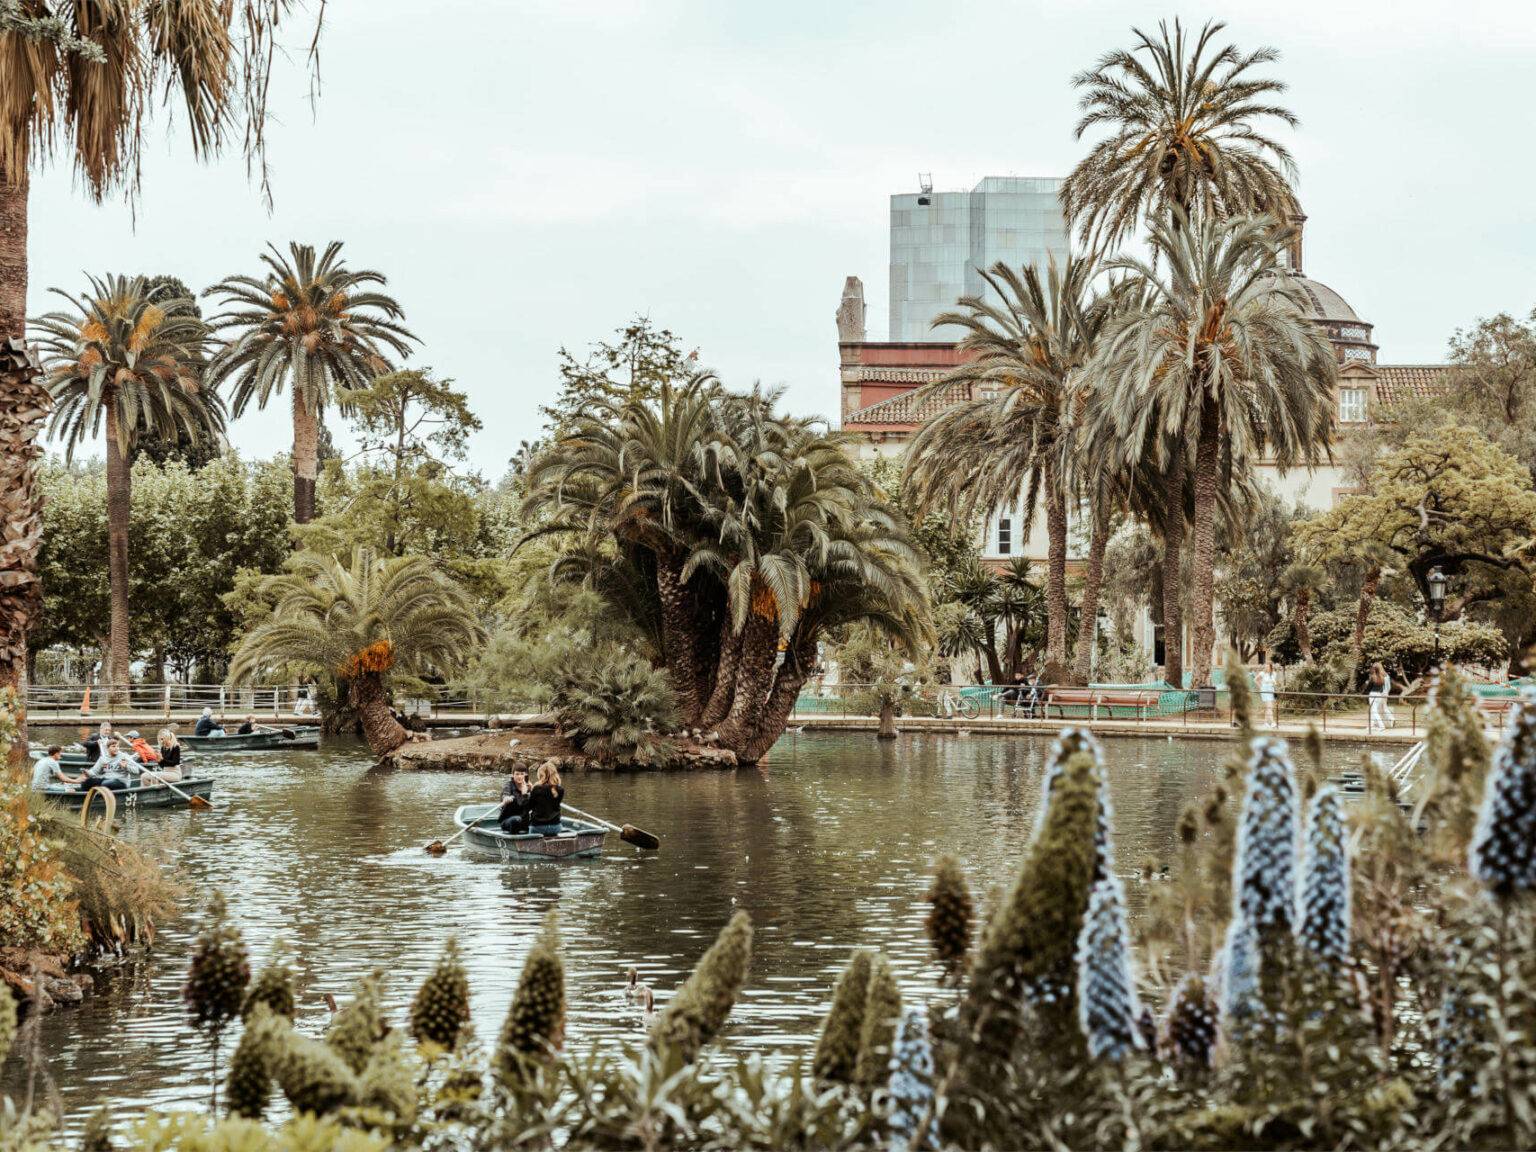 Für eine entspannte Pause in Barcelona kann man im Parc de la Ciutadella auf einem der Ruderboote zwischen Palmen entspannen.